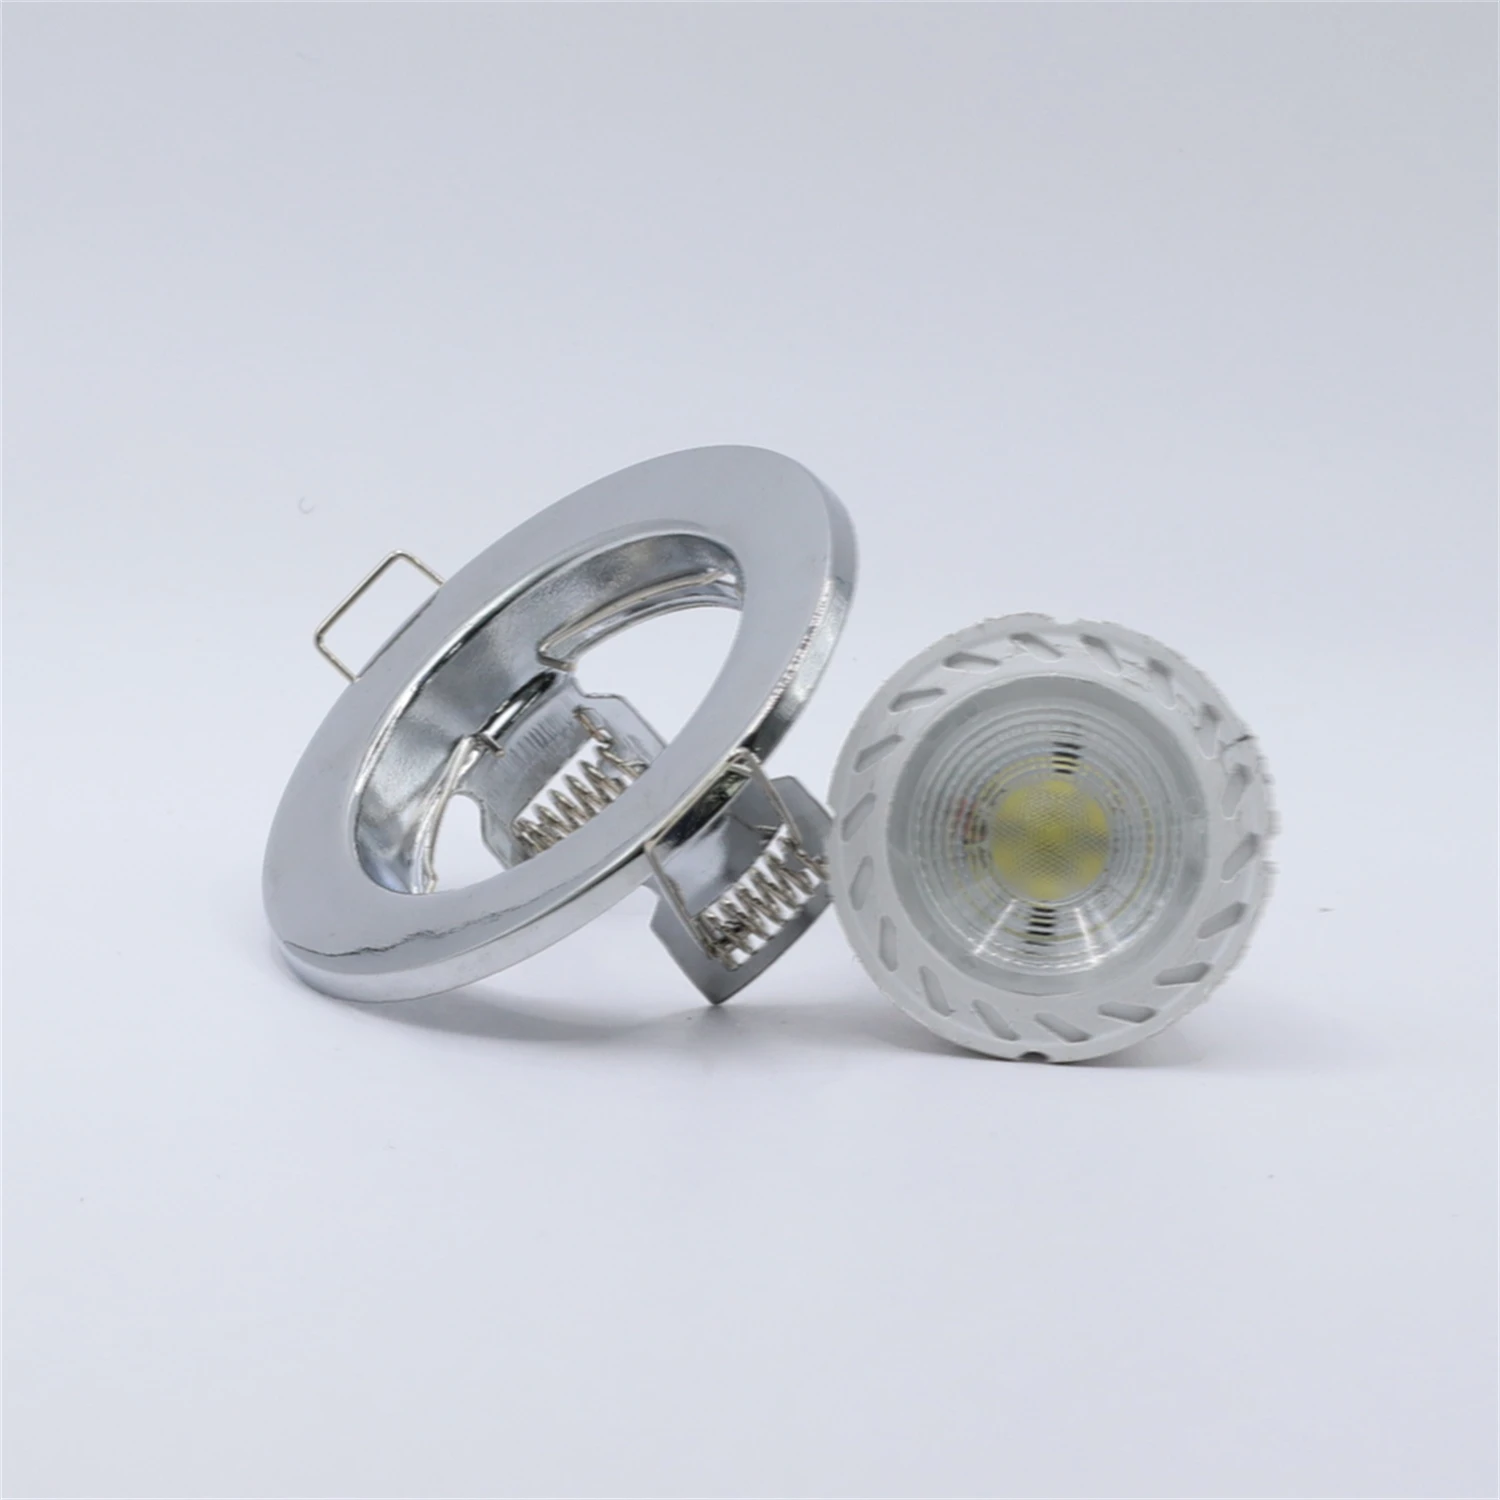 Комплект из 2 встраиваемых светильников GU5.3 MR16 с матово-никелевыми вставками/морозно-белый потолочный светильник